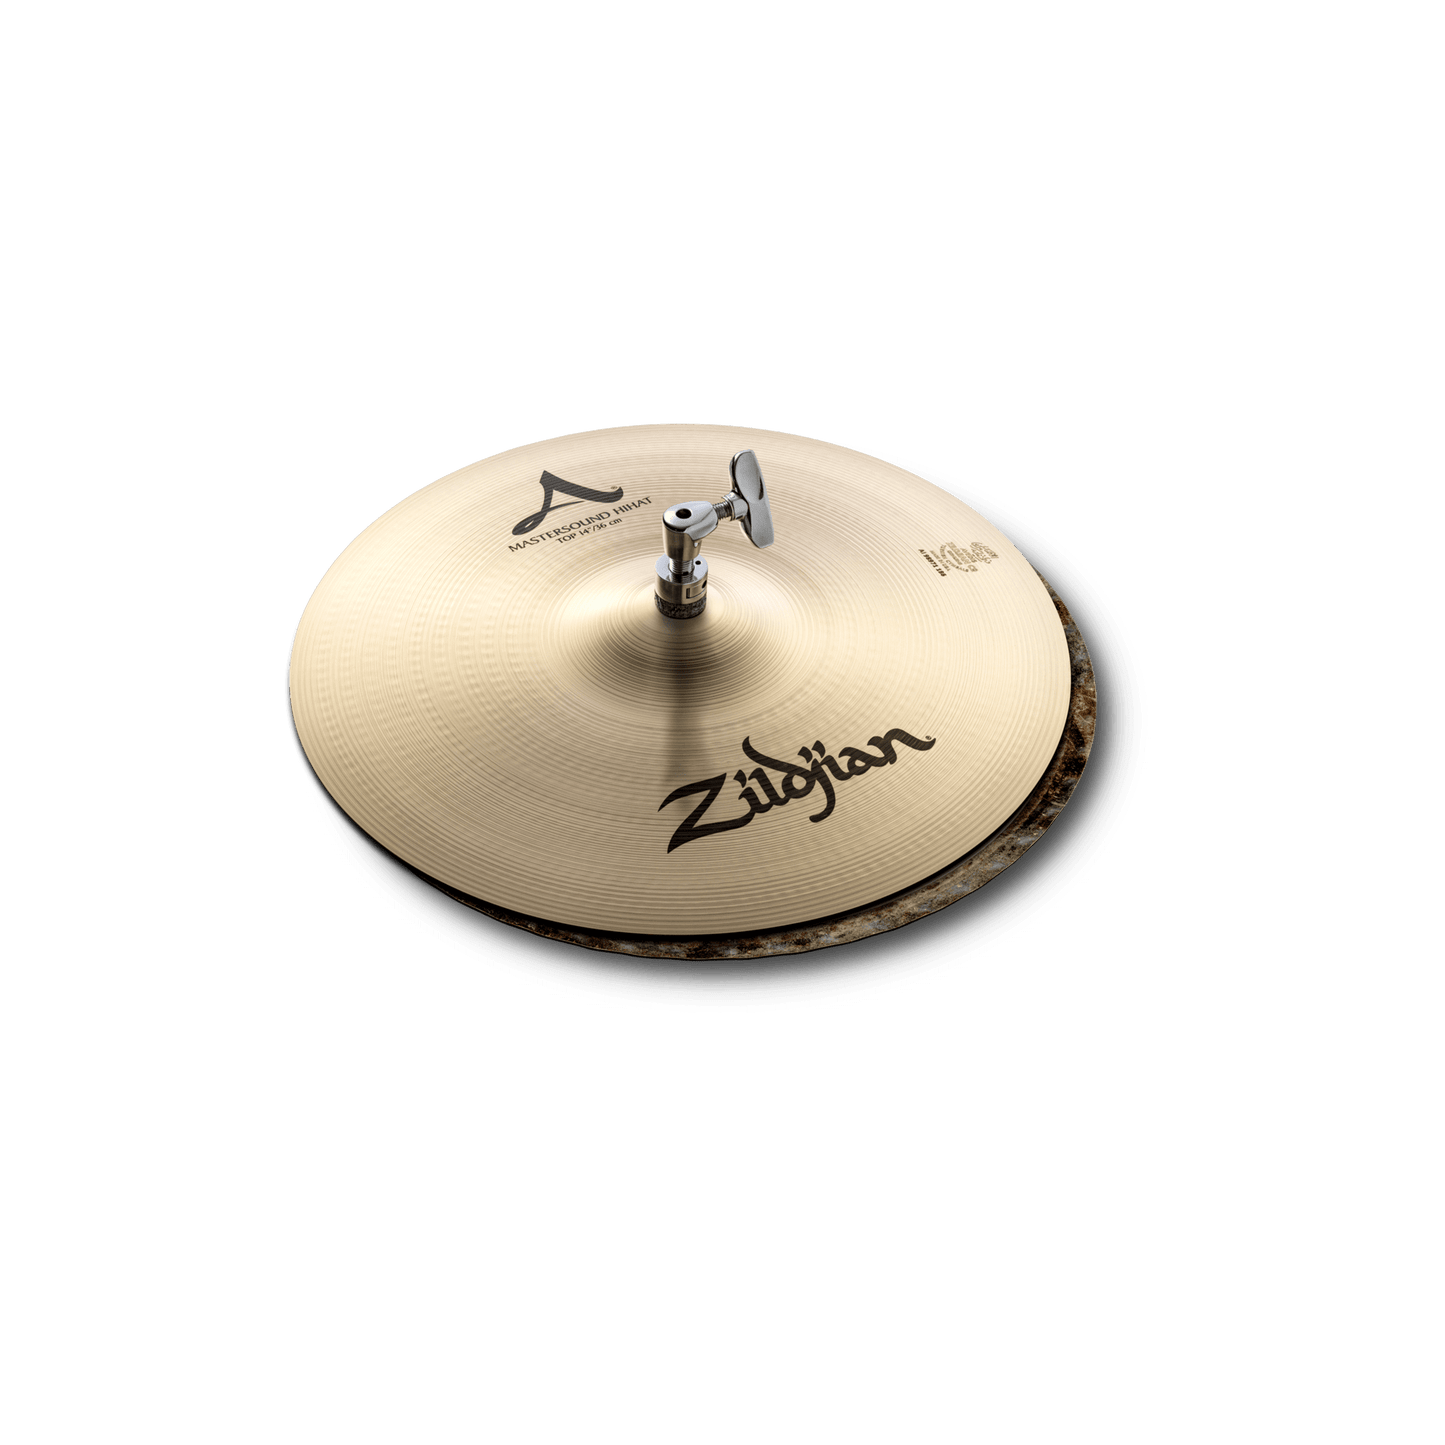 A Zildjian Rock Cymbal Pack